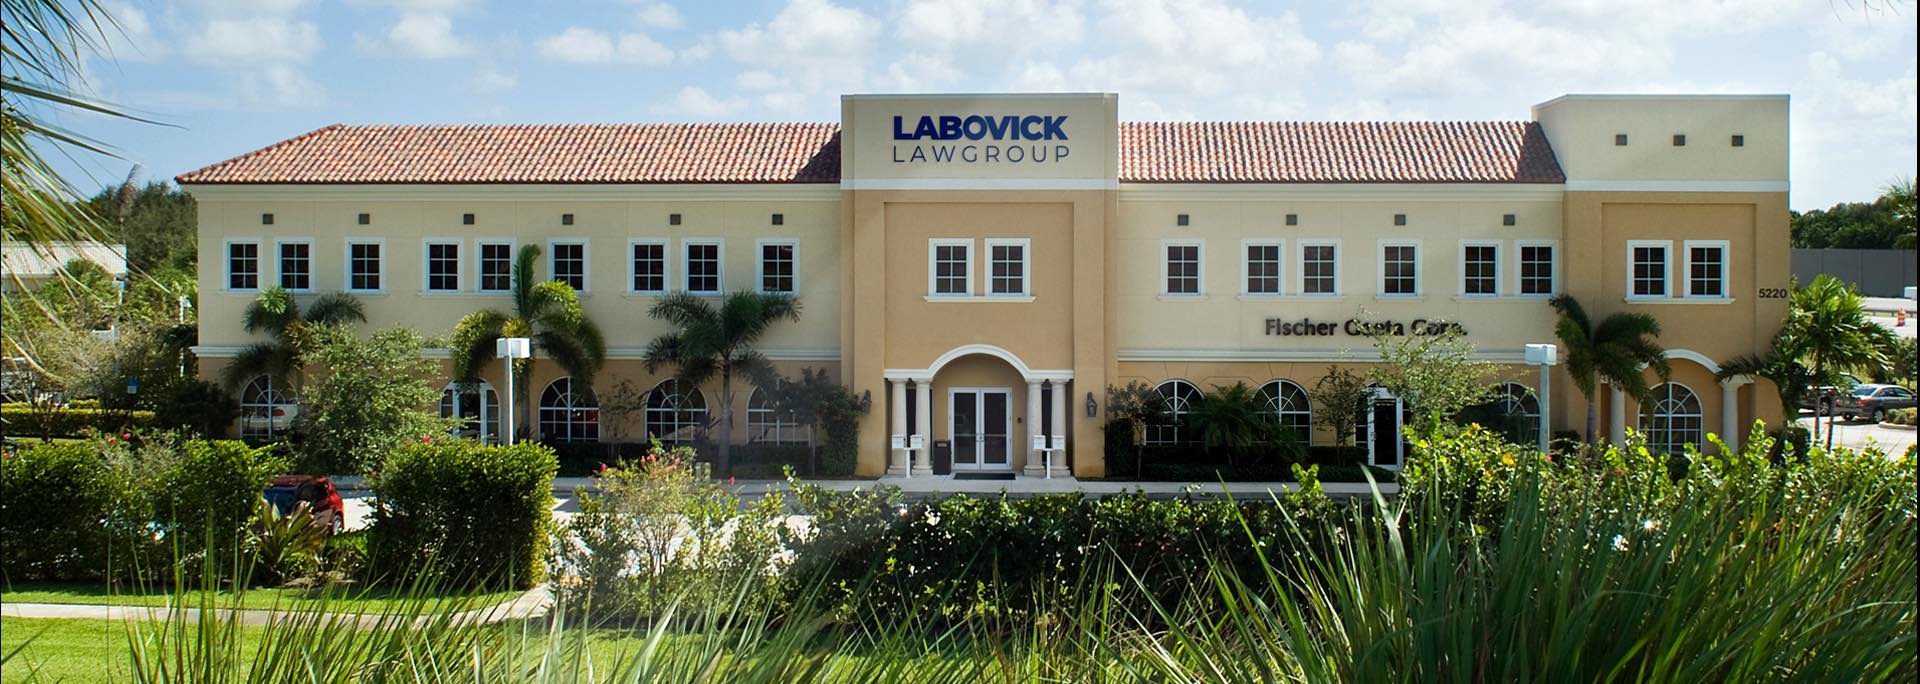 Oficinas de Labovick en Florida